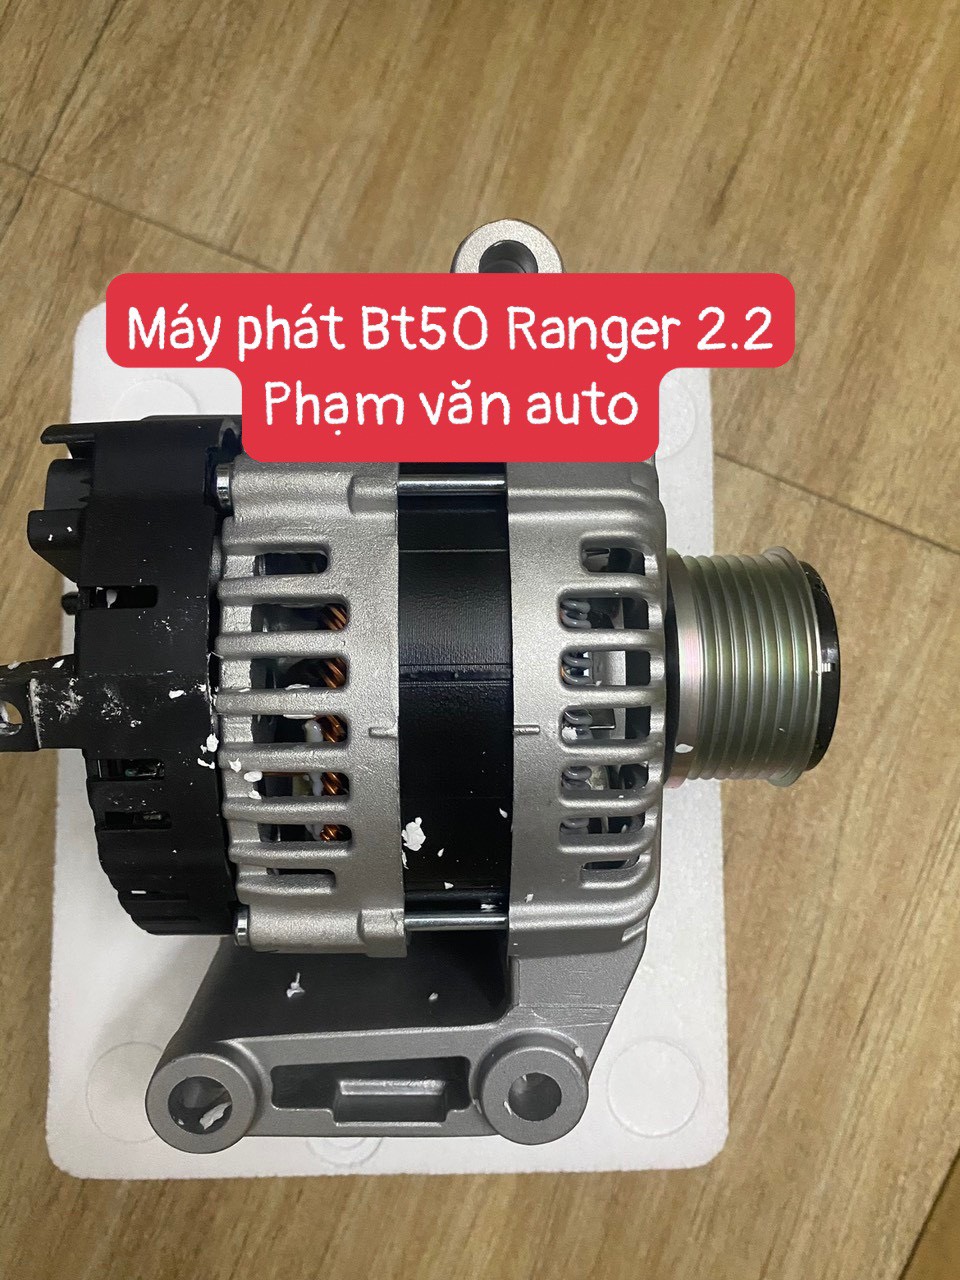 May Phat Bt50 Ranger Chinh Hang Gia Re 2